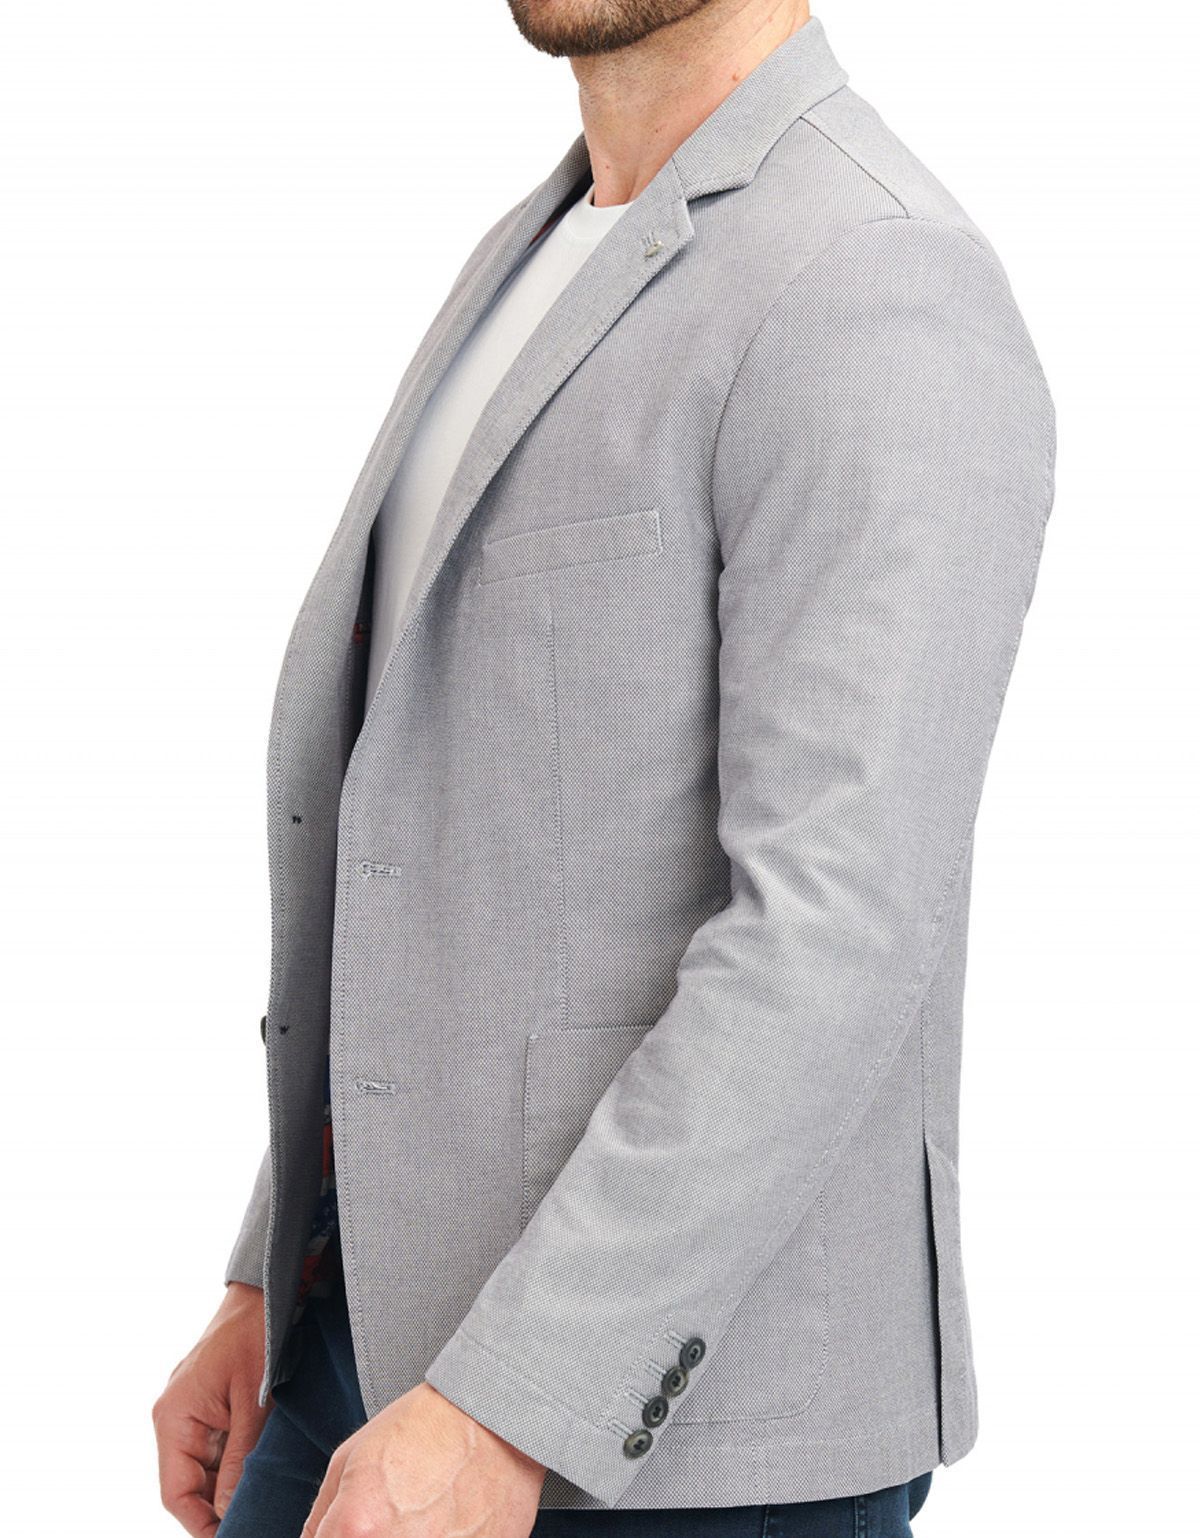 Пиджак мужской w.Wegener с накладными карманами, мод.Jack | купить в интернет-магазине Olymp-Men